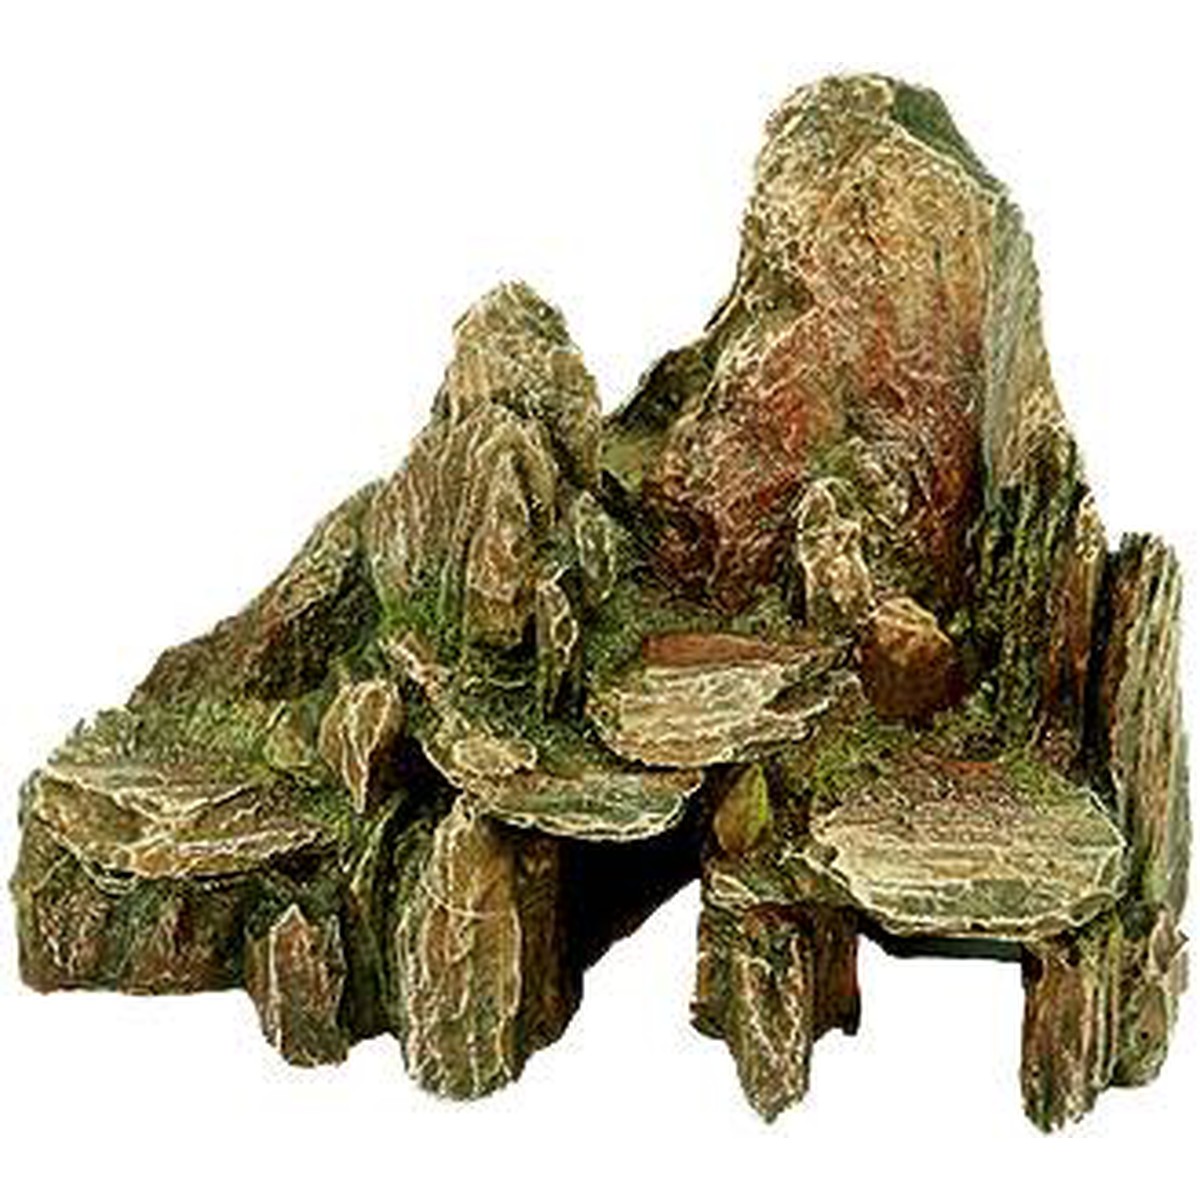   Décor-pierre 25.5 cm. coul. mousse  25.5 x 15.5 cm H 20 cm